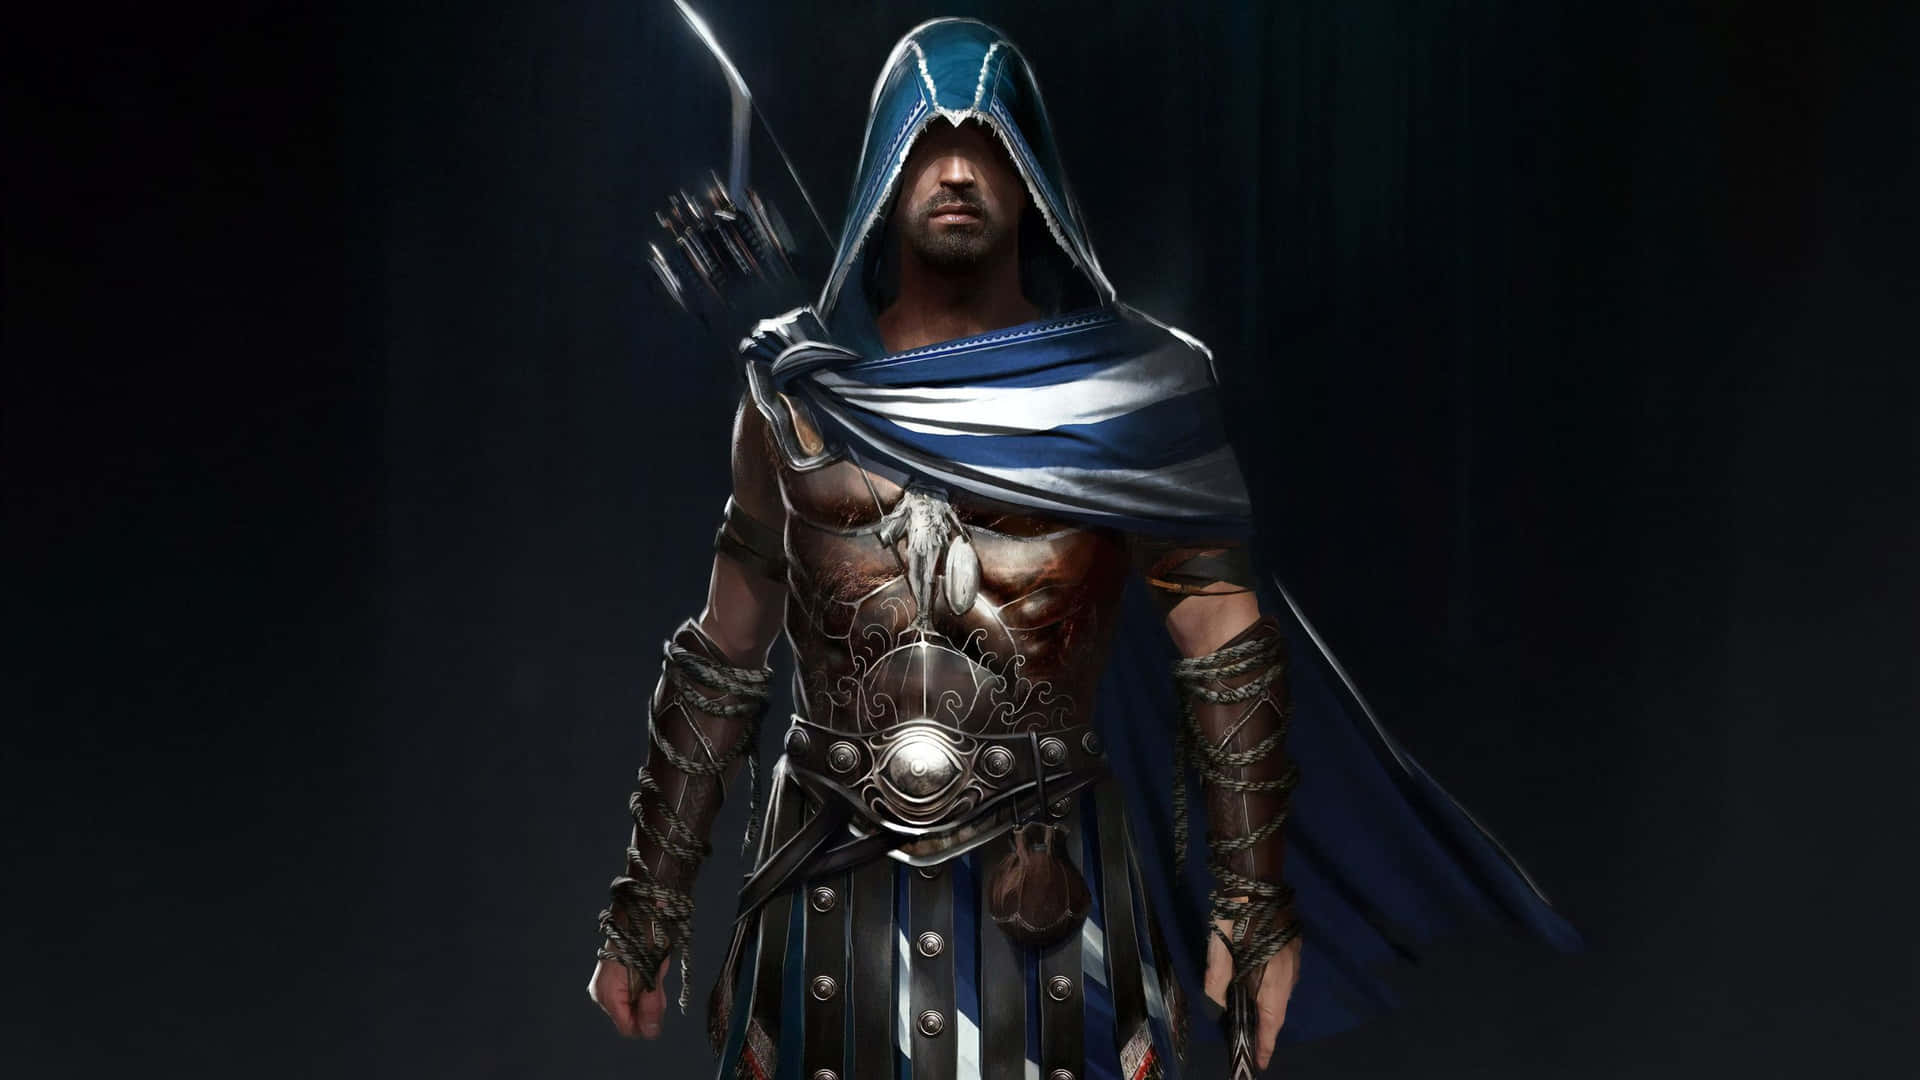 Alexiosbow And Arrow 1440p Sfondo Di Assassin's Creed Odyssey